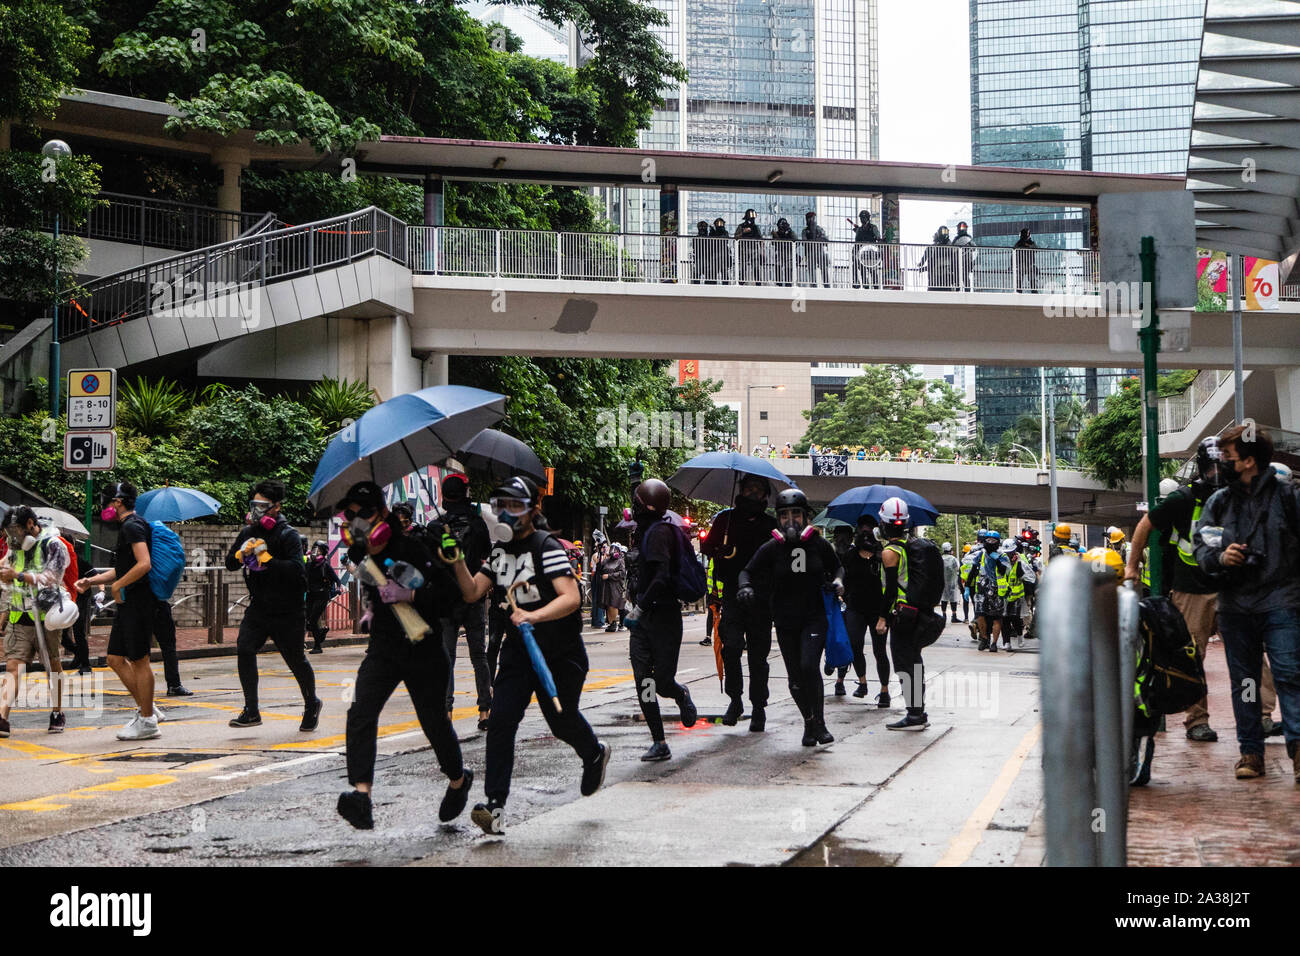 Die Demonstranten von der Polizei beobachtete von oben während der Demonstration laufen. Die Eingabe der 18 Wochenende der Unruhen, Demonstranten marschierten im Regen nach einer Anti-mask Gesetz wurde in einer Bemühung, Demonstrationen abzuhalten. Die Demonstranten skandierten Parolen und fuhr fort zu Fragen für die fünf Forderungen erfüllt werden. Die Demonstranten zu Zusammenstößen zwischen Polizei und wurden mit Gas, Gummigeschossen getroffen, und einer Wasserkanone bis mehrere wurden schließlich verhaftet. Stockfoto